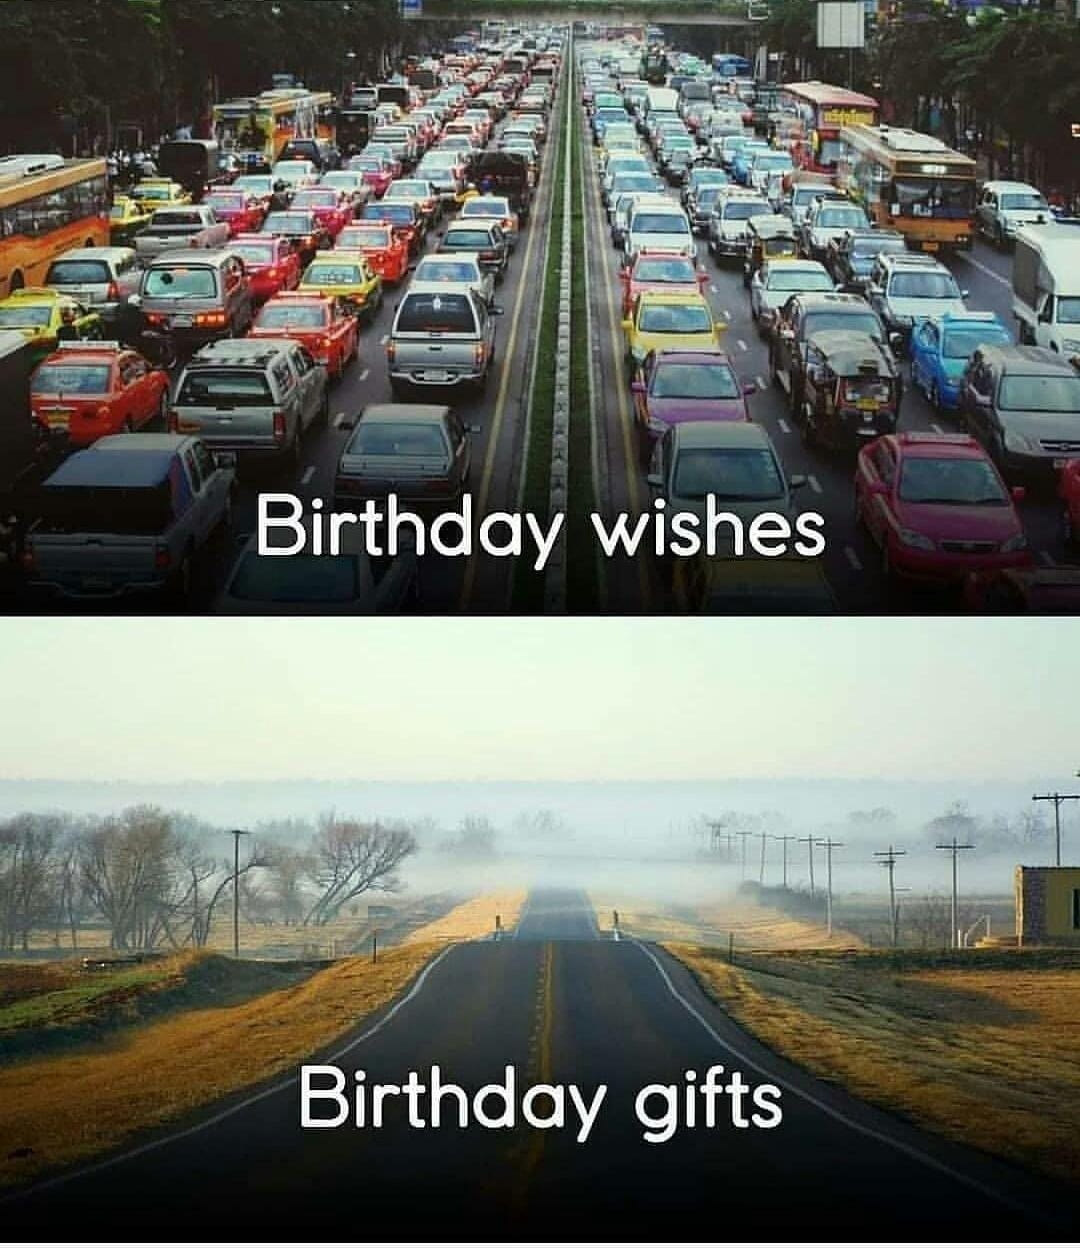 Birthday wishes vs Birthday gifts  CRAMEMS MEMES